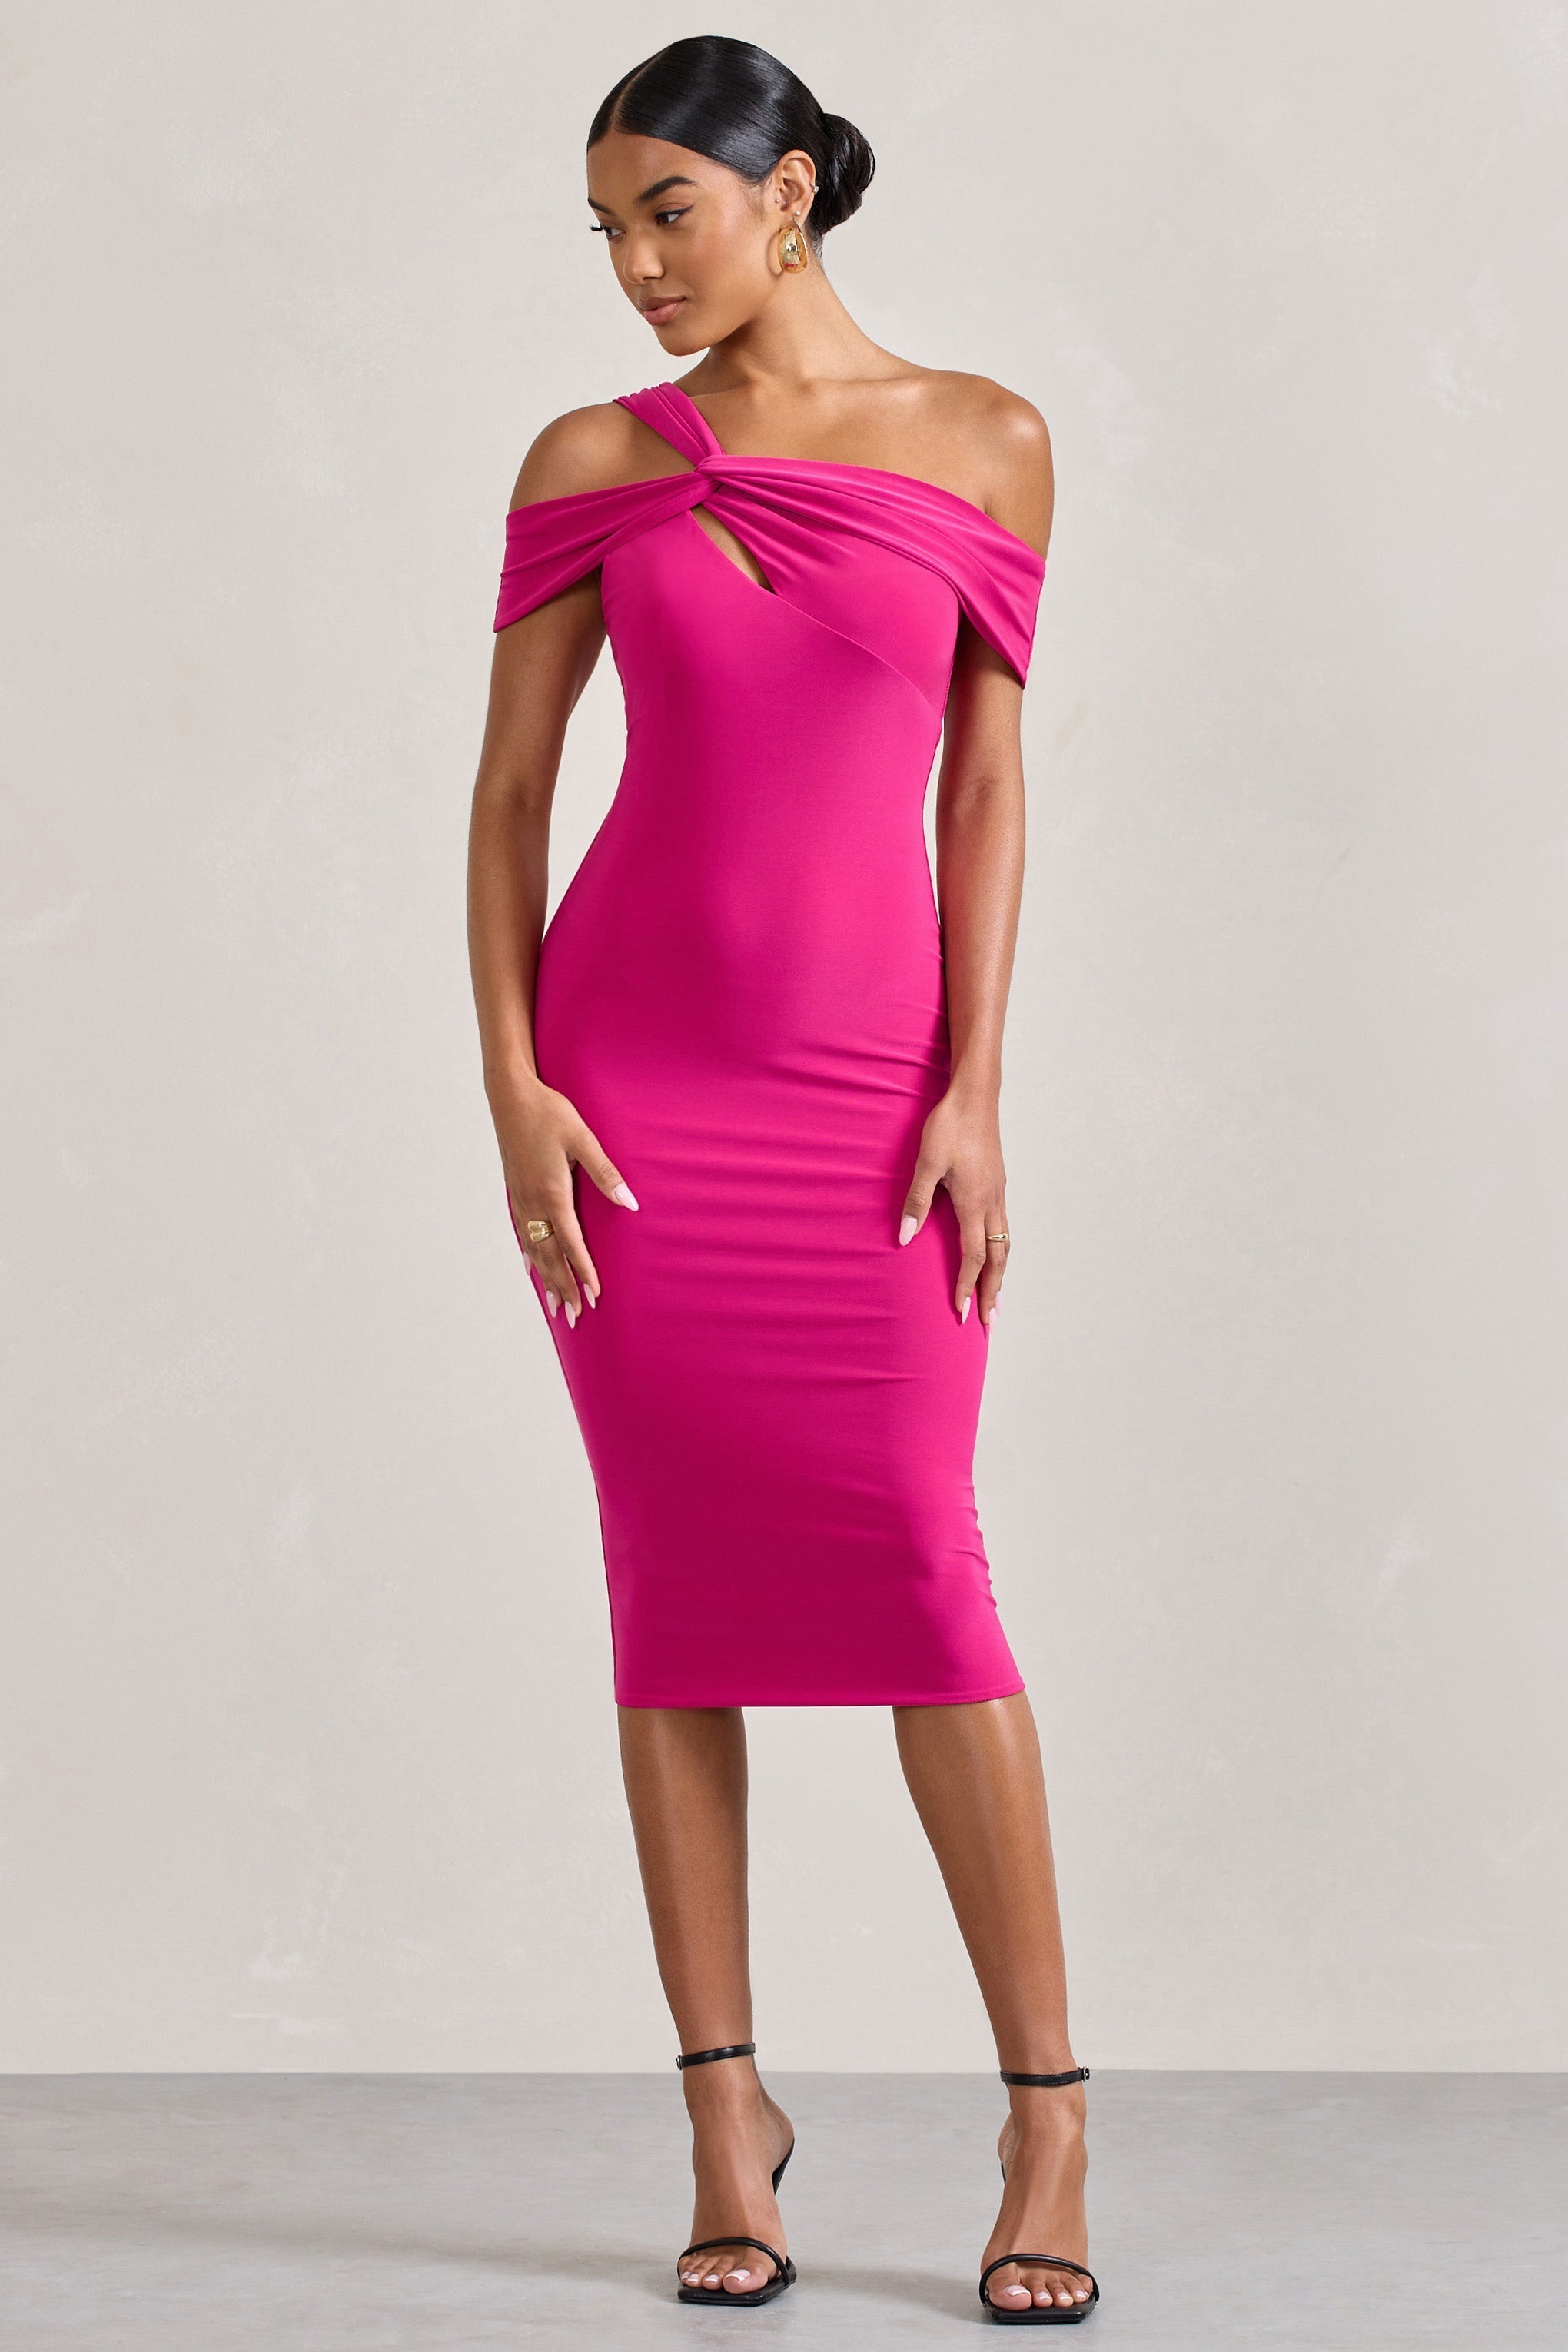 Chain Reaction Fuchsia Pink Strappy Asymmetric Bodycon Midi Dress